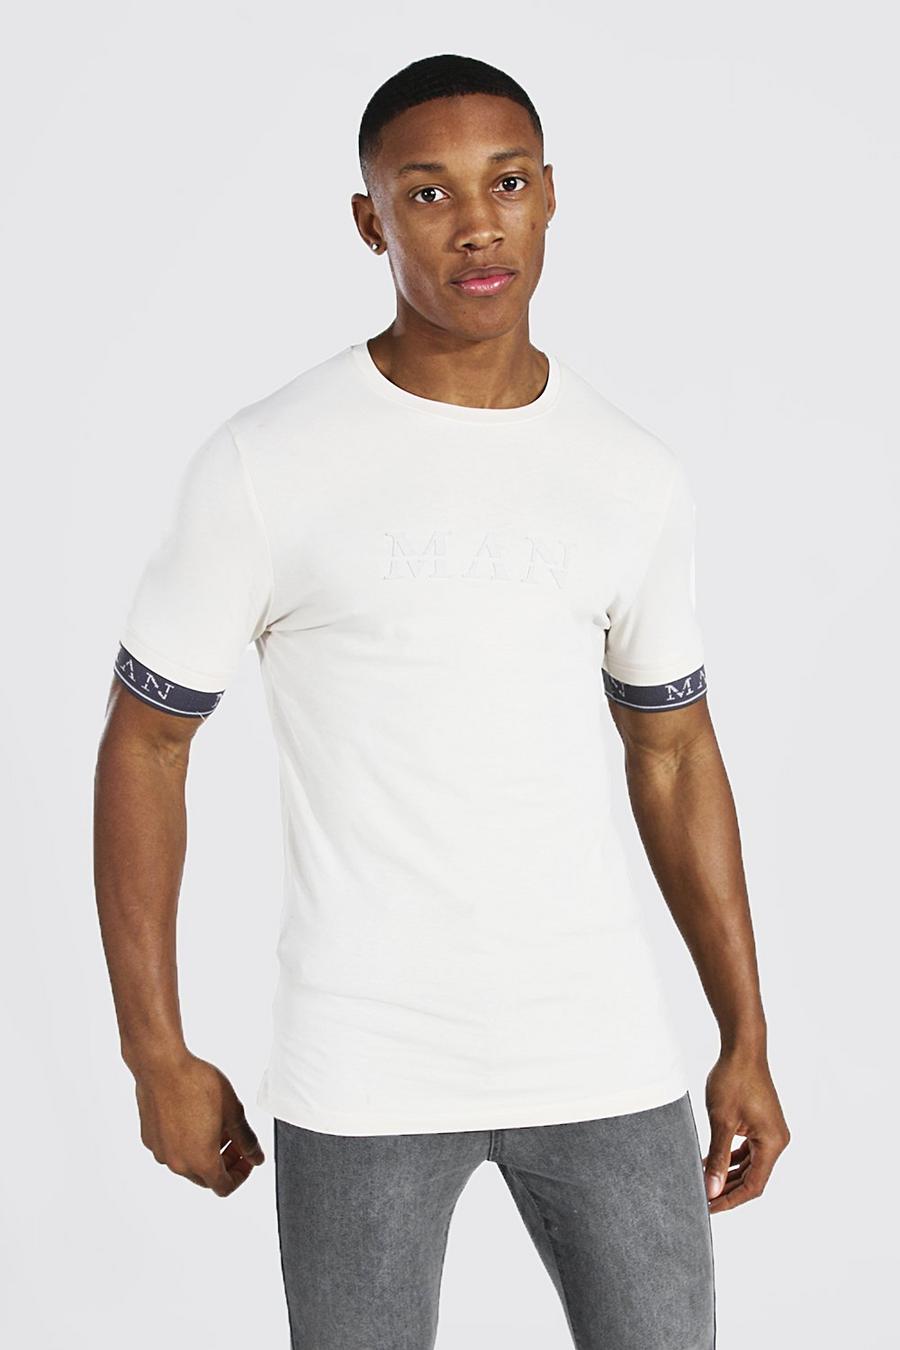 T-shirt sagomata con giromanica con scritta MAN in caratteri romani, Pietra leggera image number 1